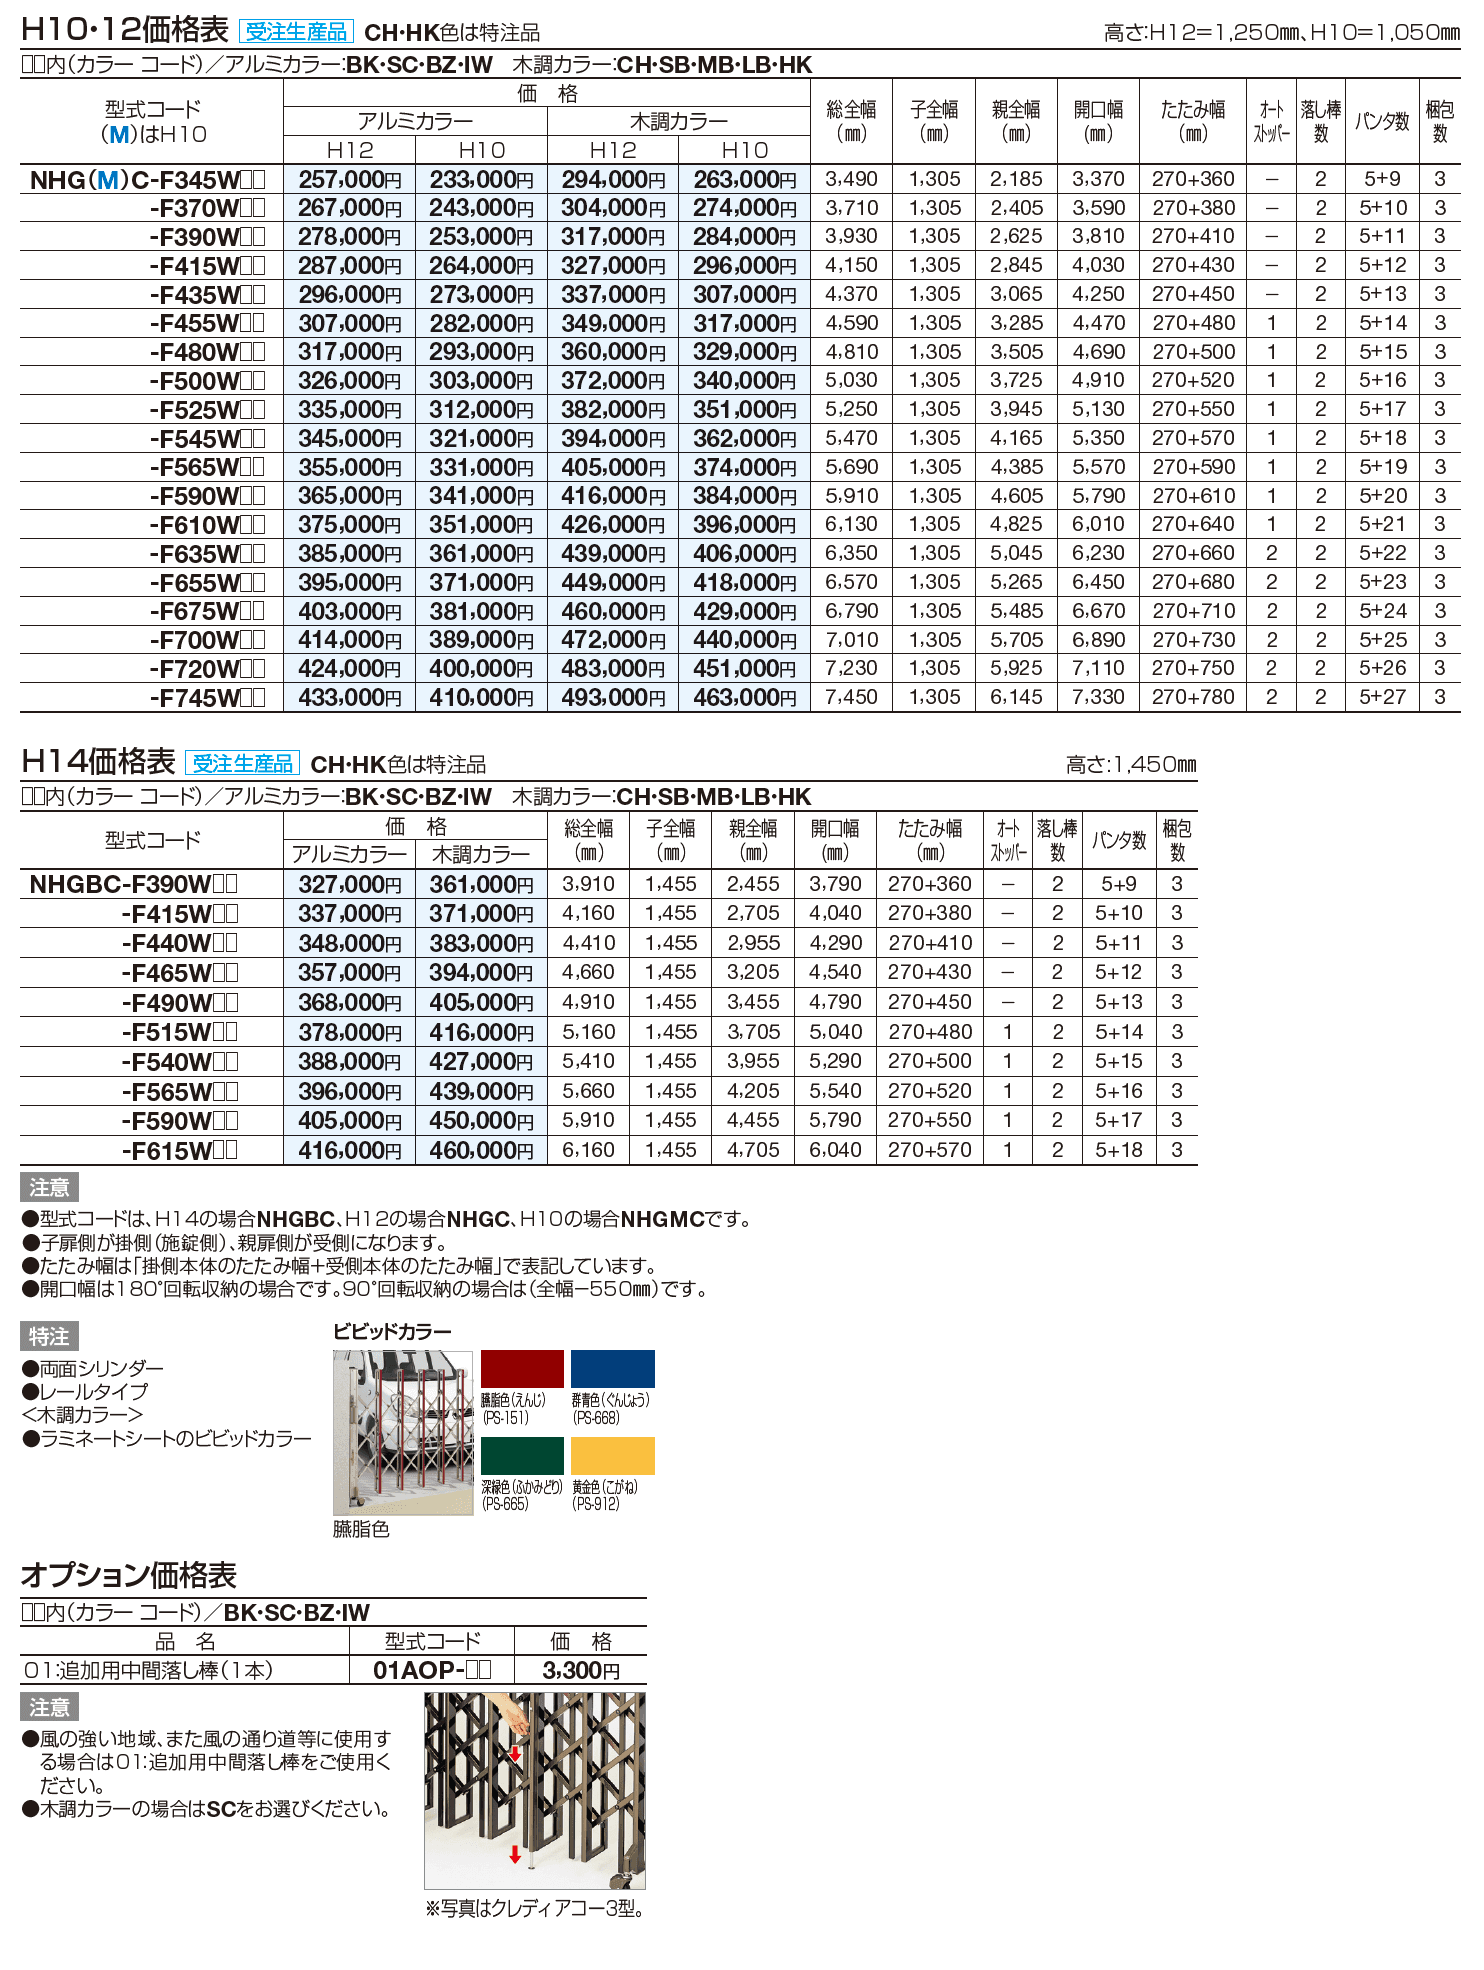 ニューハピネスHG 両開き親子(キャスタータイプ)【2023年版】_価格_1